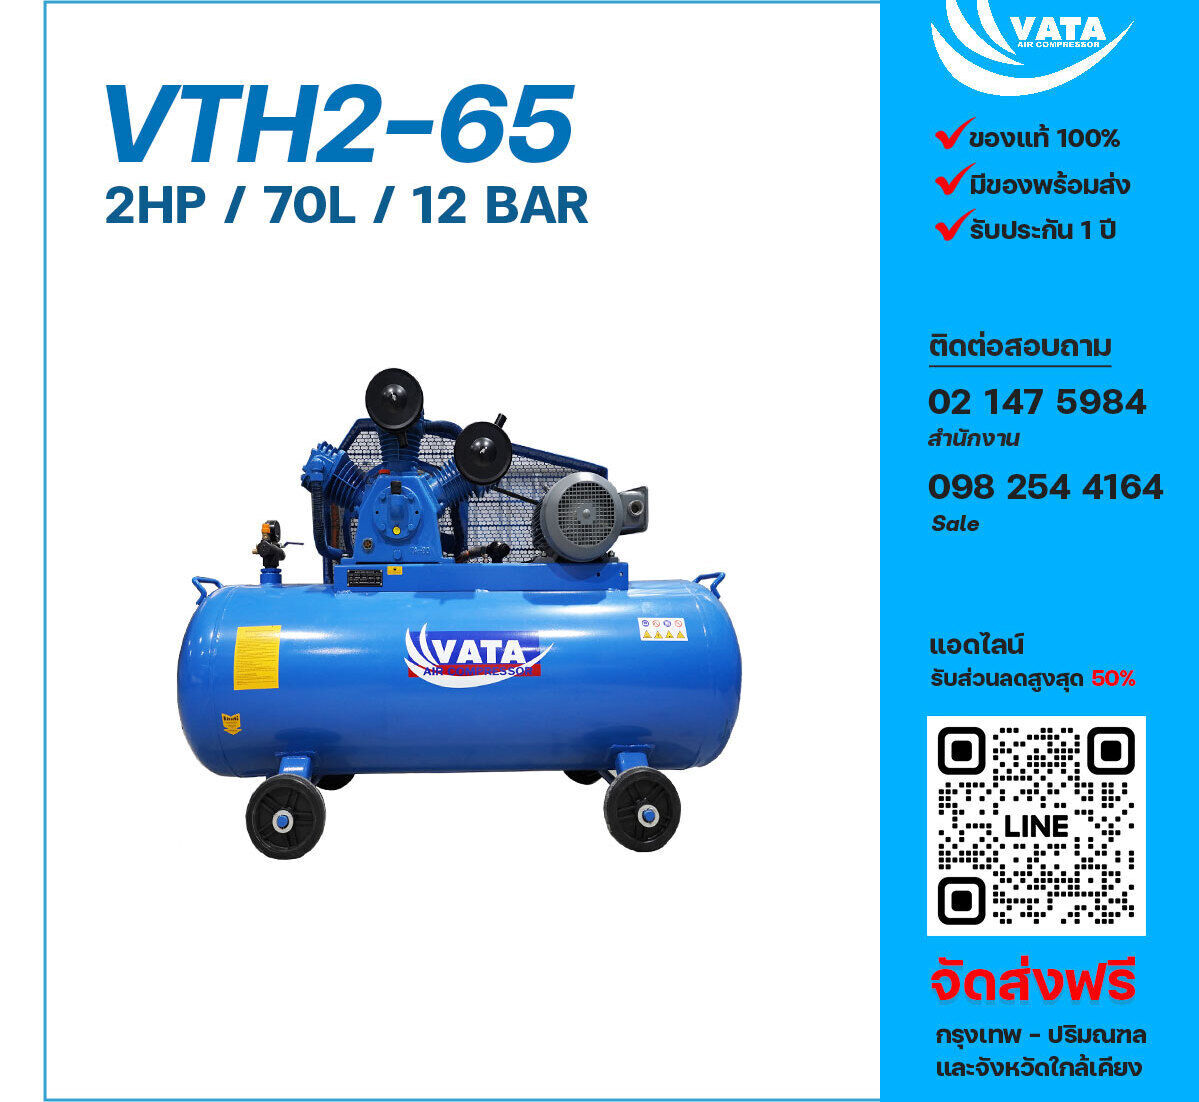 ปั๊มลมวาตะแรงดันสูง VATA Two-Stage VTH2-65 220V ปั๊มลมลูกสูบ ขนาด 3 สูบ 2 แรงม้า 70 ลิตร VATA พร้อมมอเตอร์ ไฟ 220V ส่งฟรี กรุงเทพฯ-ปริมณฑล รับประกัน 1 ปี